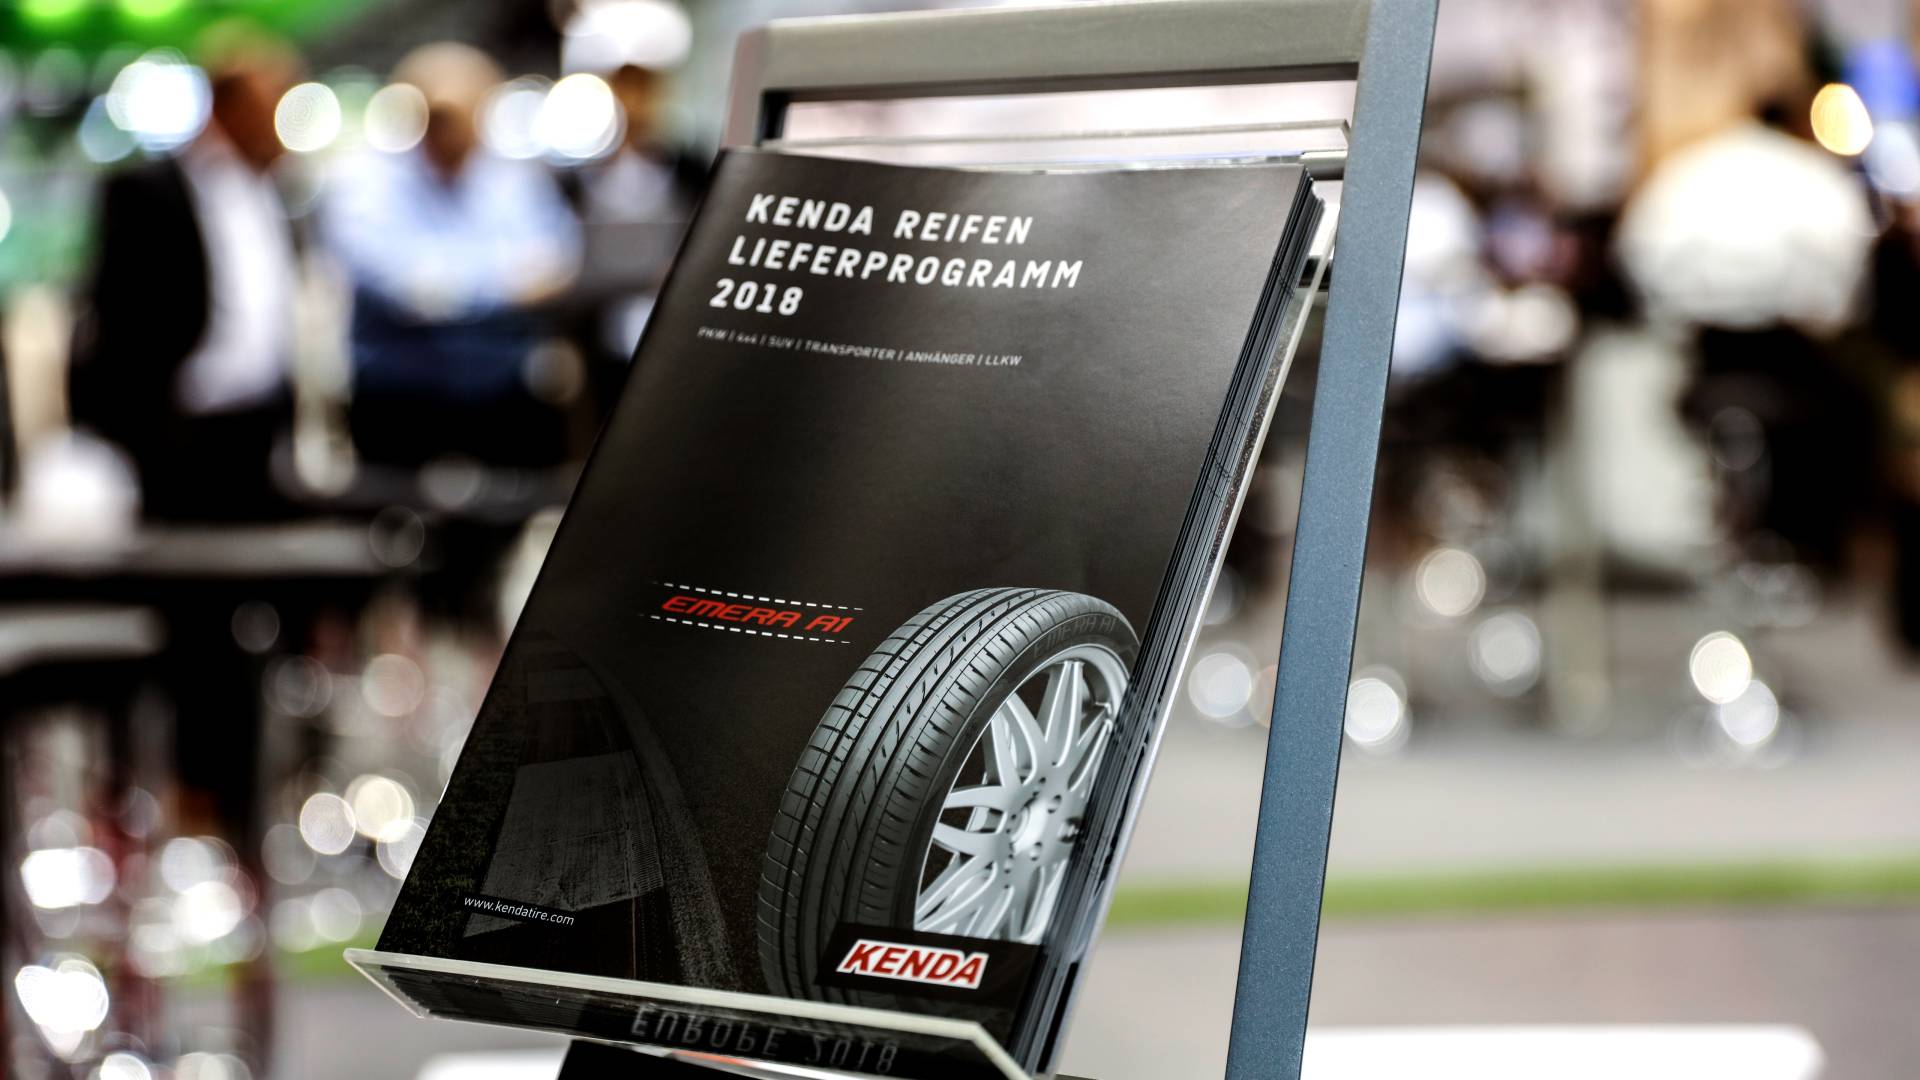 KENDA’s tyre product range 2018 on display